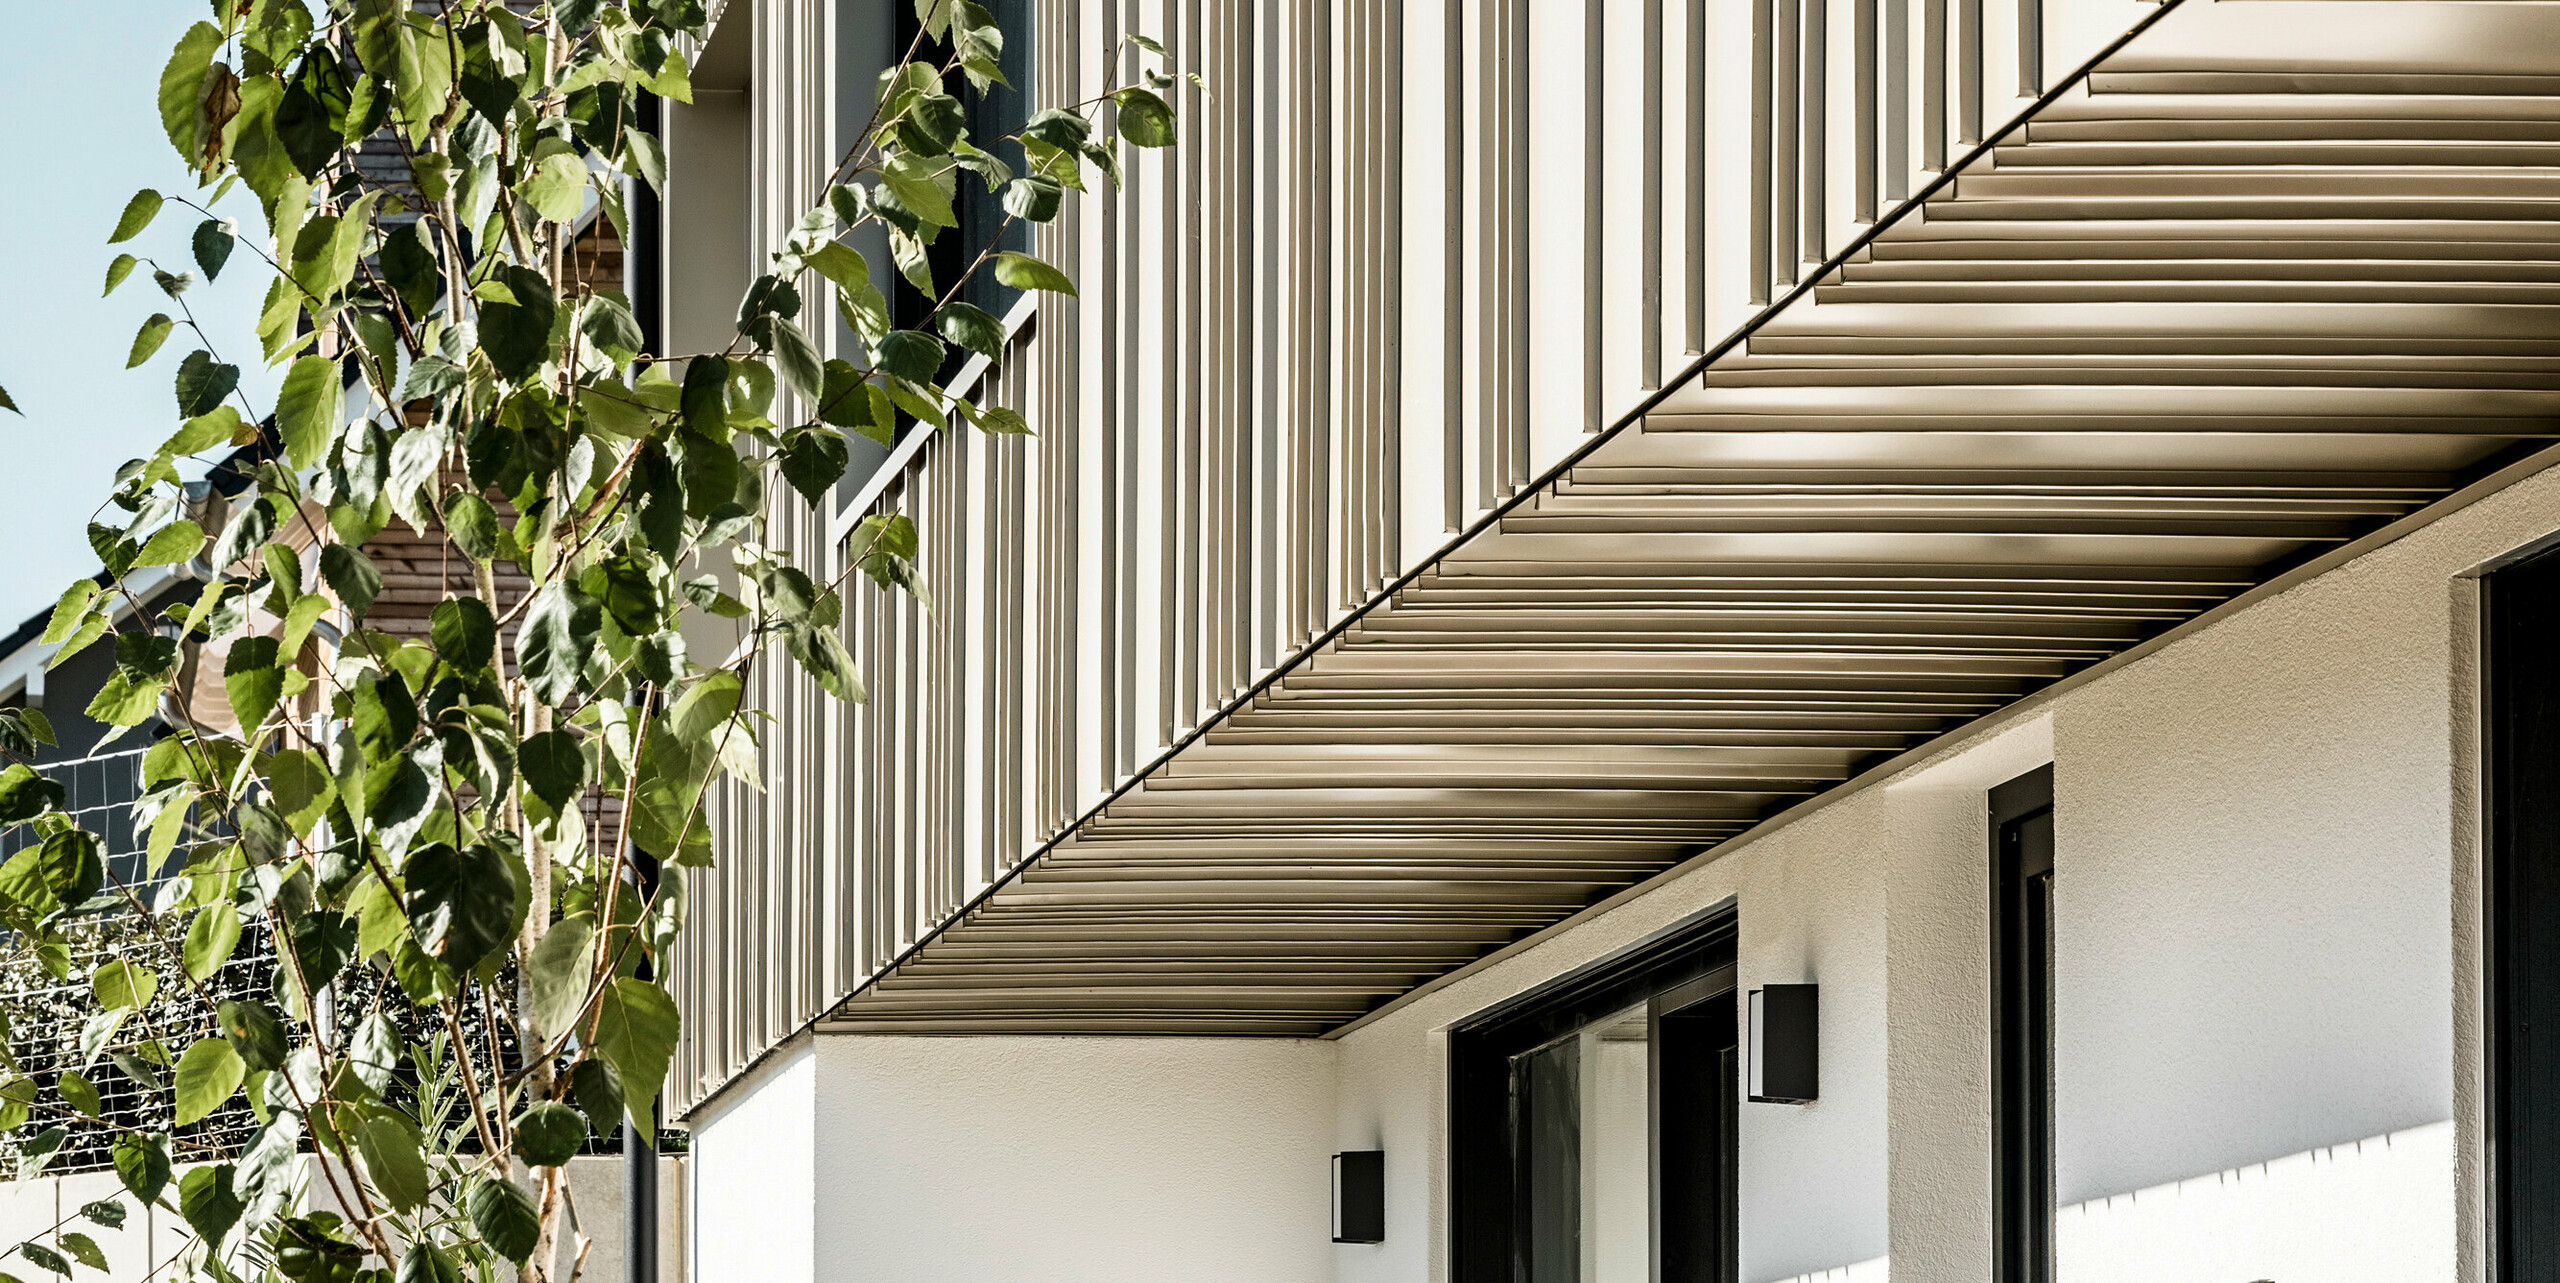 Seitenansicht eines zeitgenössischen Hauses mit einem PREFA Fassadensystem in Lichtbronze, das eine präzise Verarbeitung zeigt. Die Aluminiumfassade aus FALZONAL bildet einen attraktiven Kontrast zum schlichten Weiß des Erdgeschosses. Die dunklen Fensterrahmen und Außenlichter betonen die klare Linienführung der Architektur. Im Vordergrund verleihen grüne Bäume dem Bild eine natürliche Tiefe und unterstreichen die umweltfreundliche Bauweise mit langlebigen und recyclebaren PREFA Aluminiumprodukten.